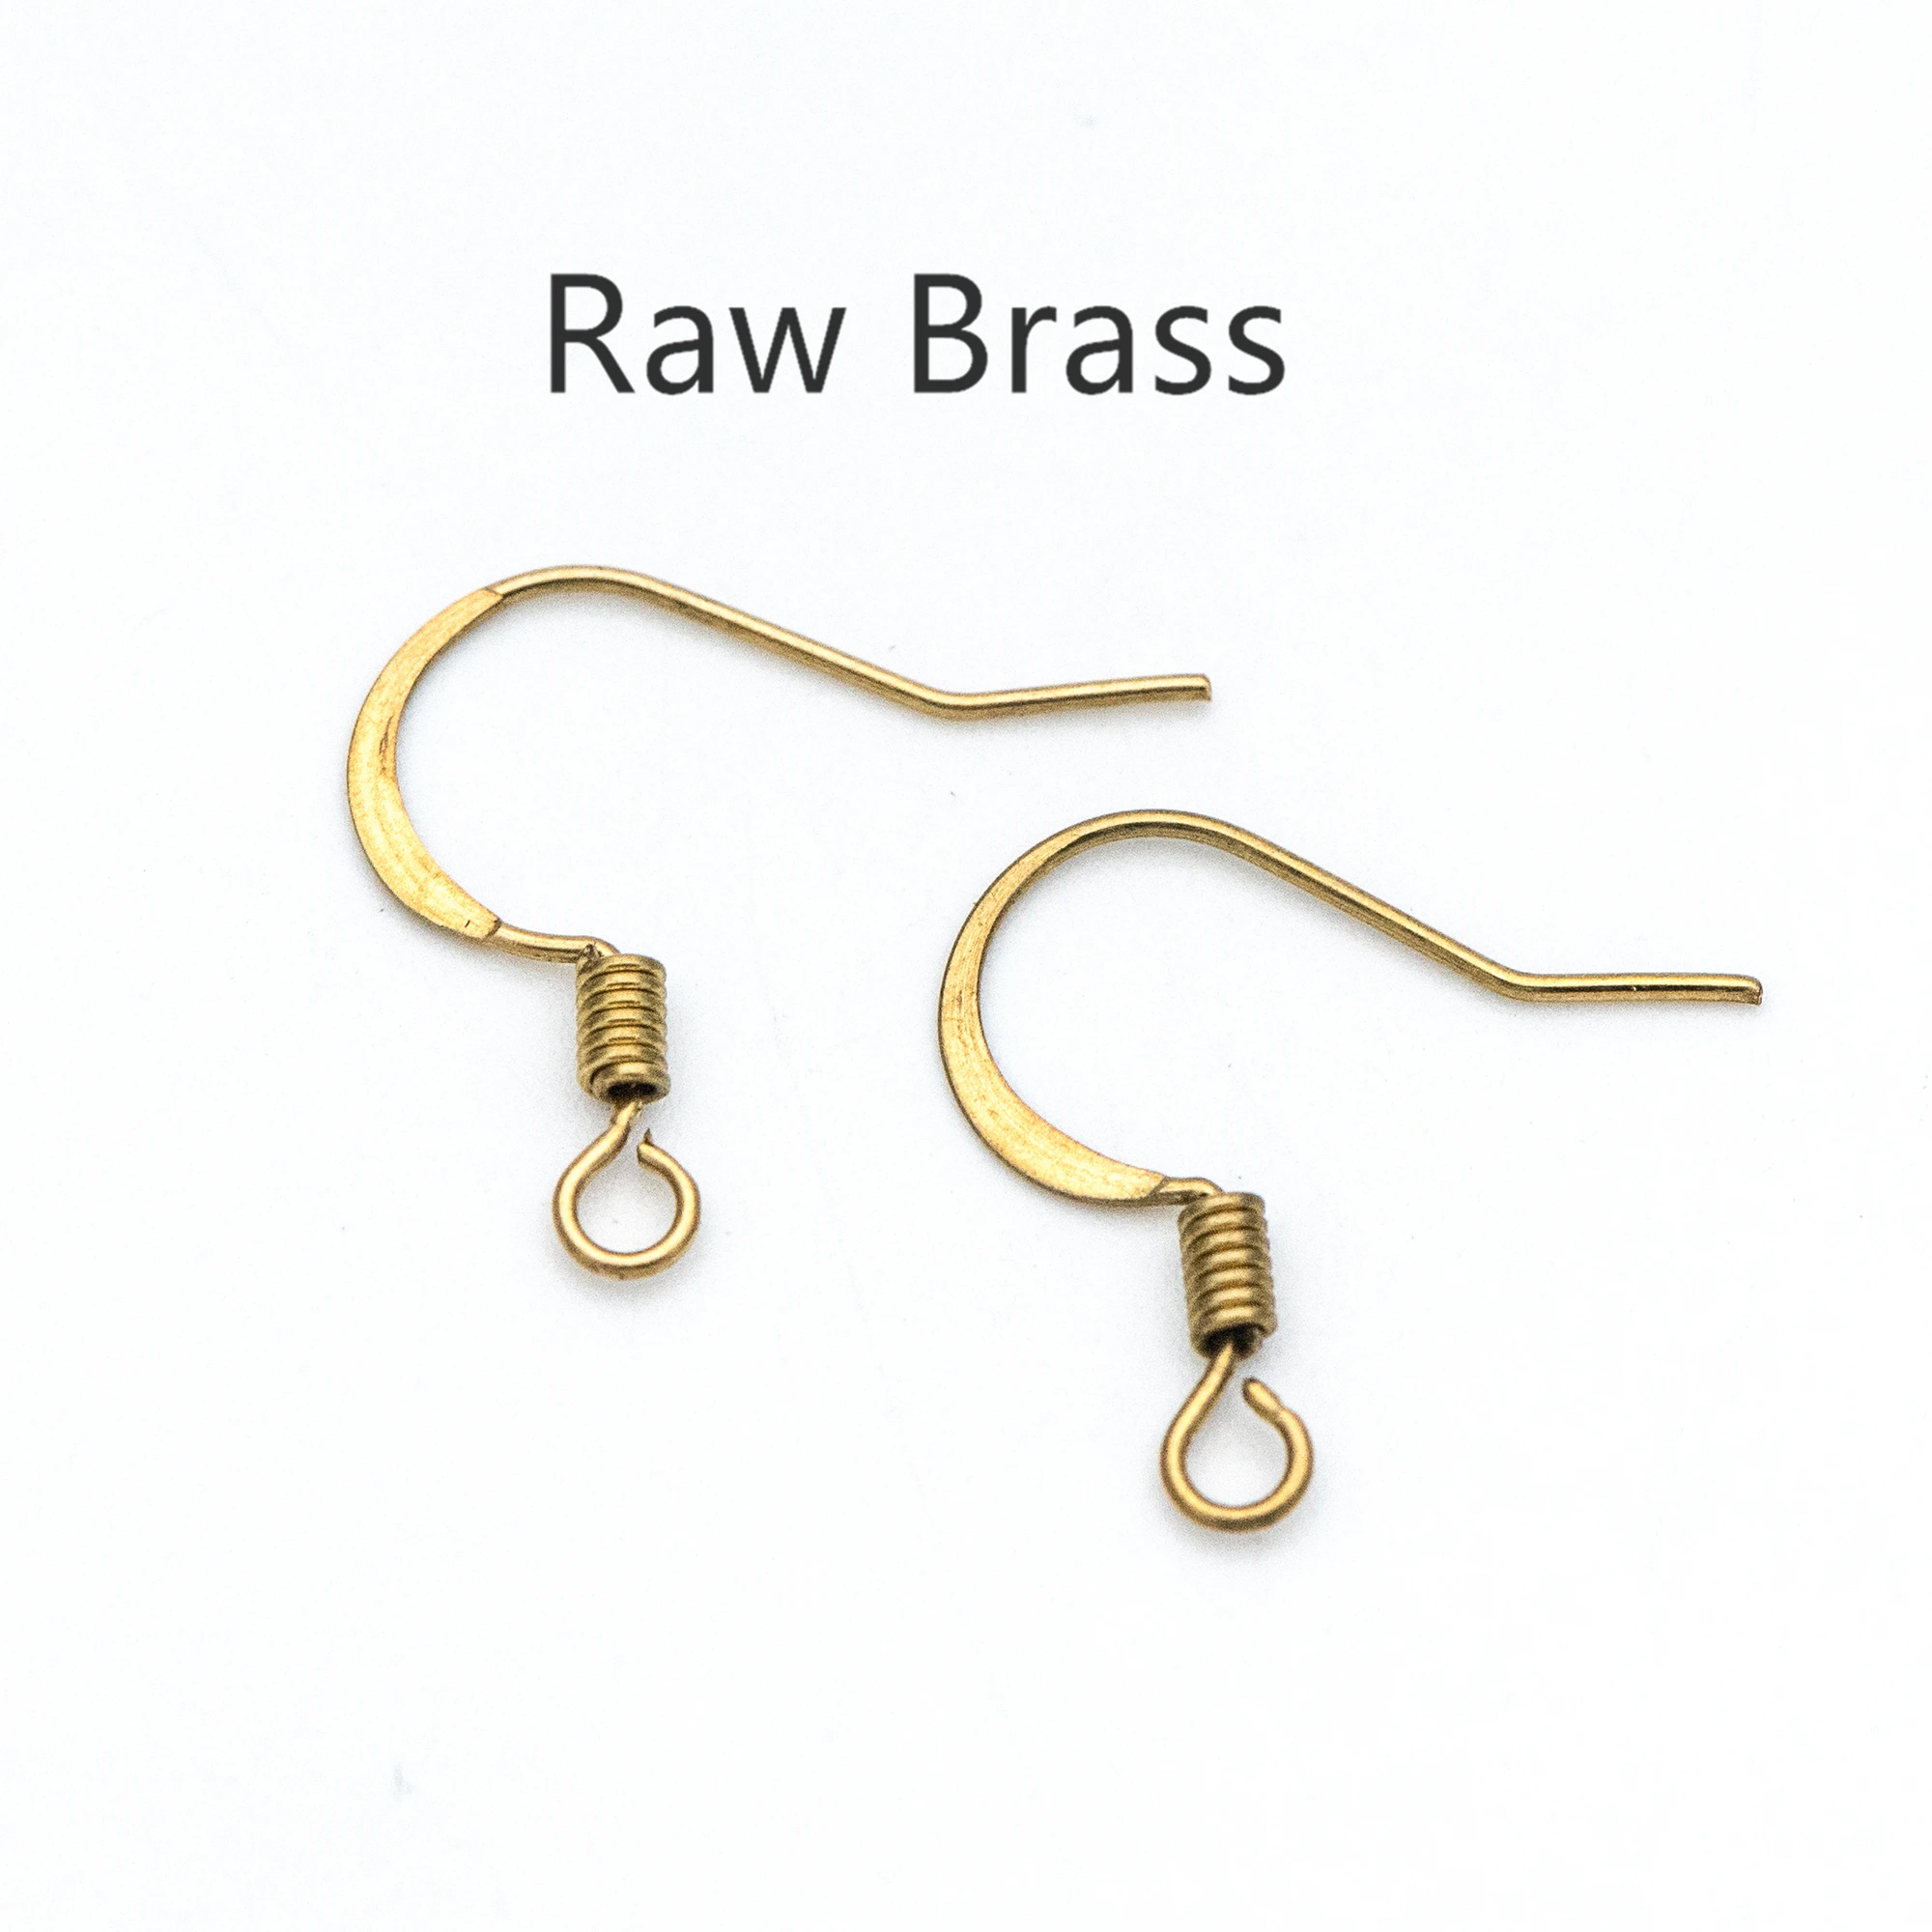 

100pcs Raw Brass Earring Hooks 18x16mm, Yellow Brass Ear Wire, DIY Earring Findings/Making Wholesale (RB-181)